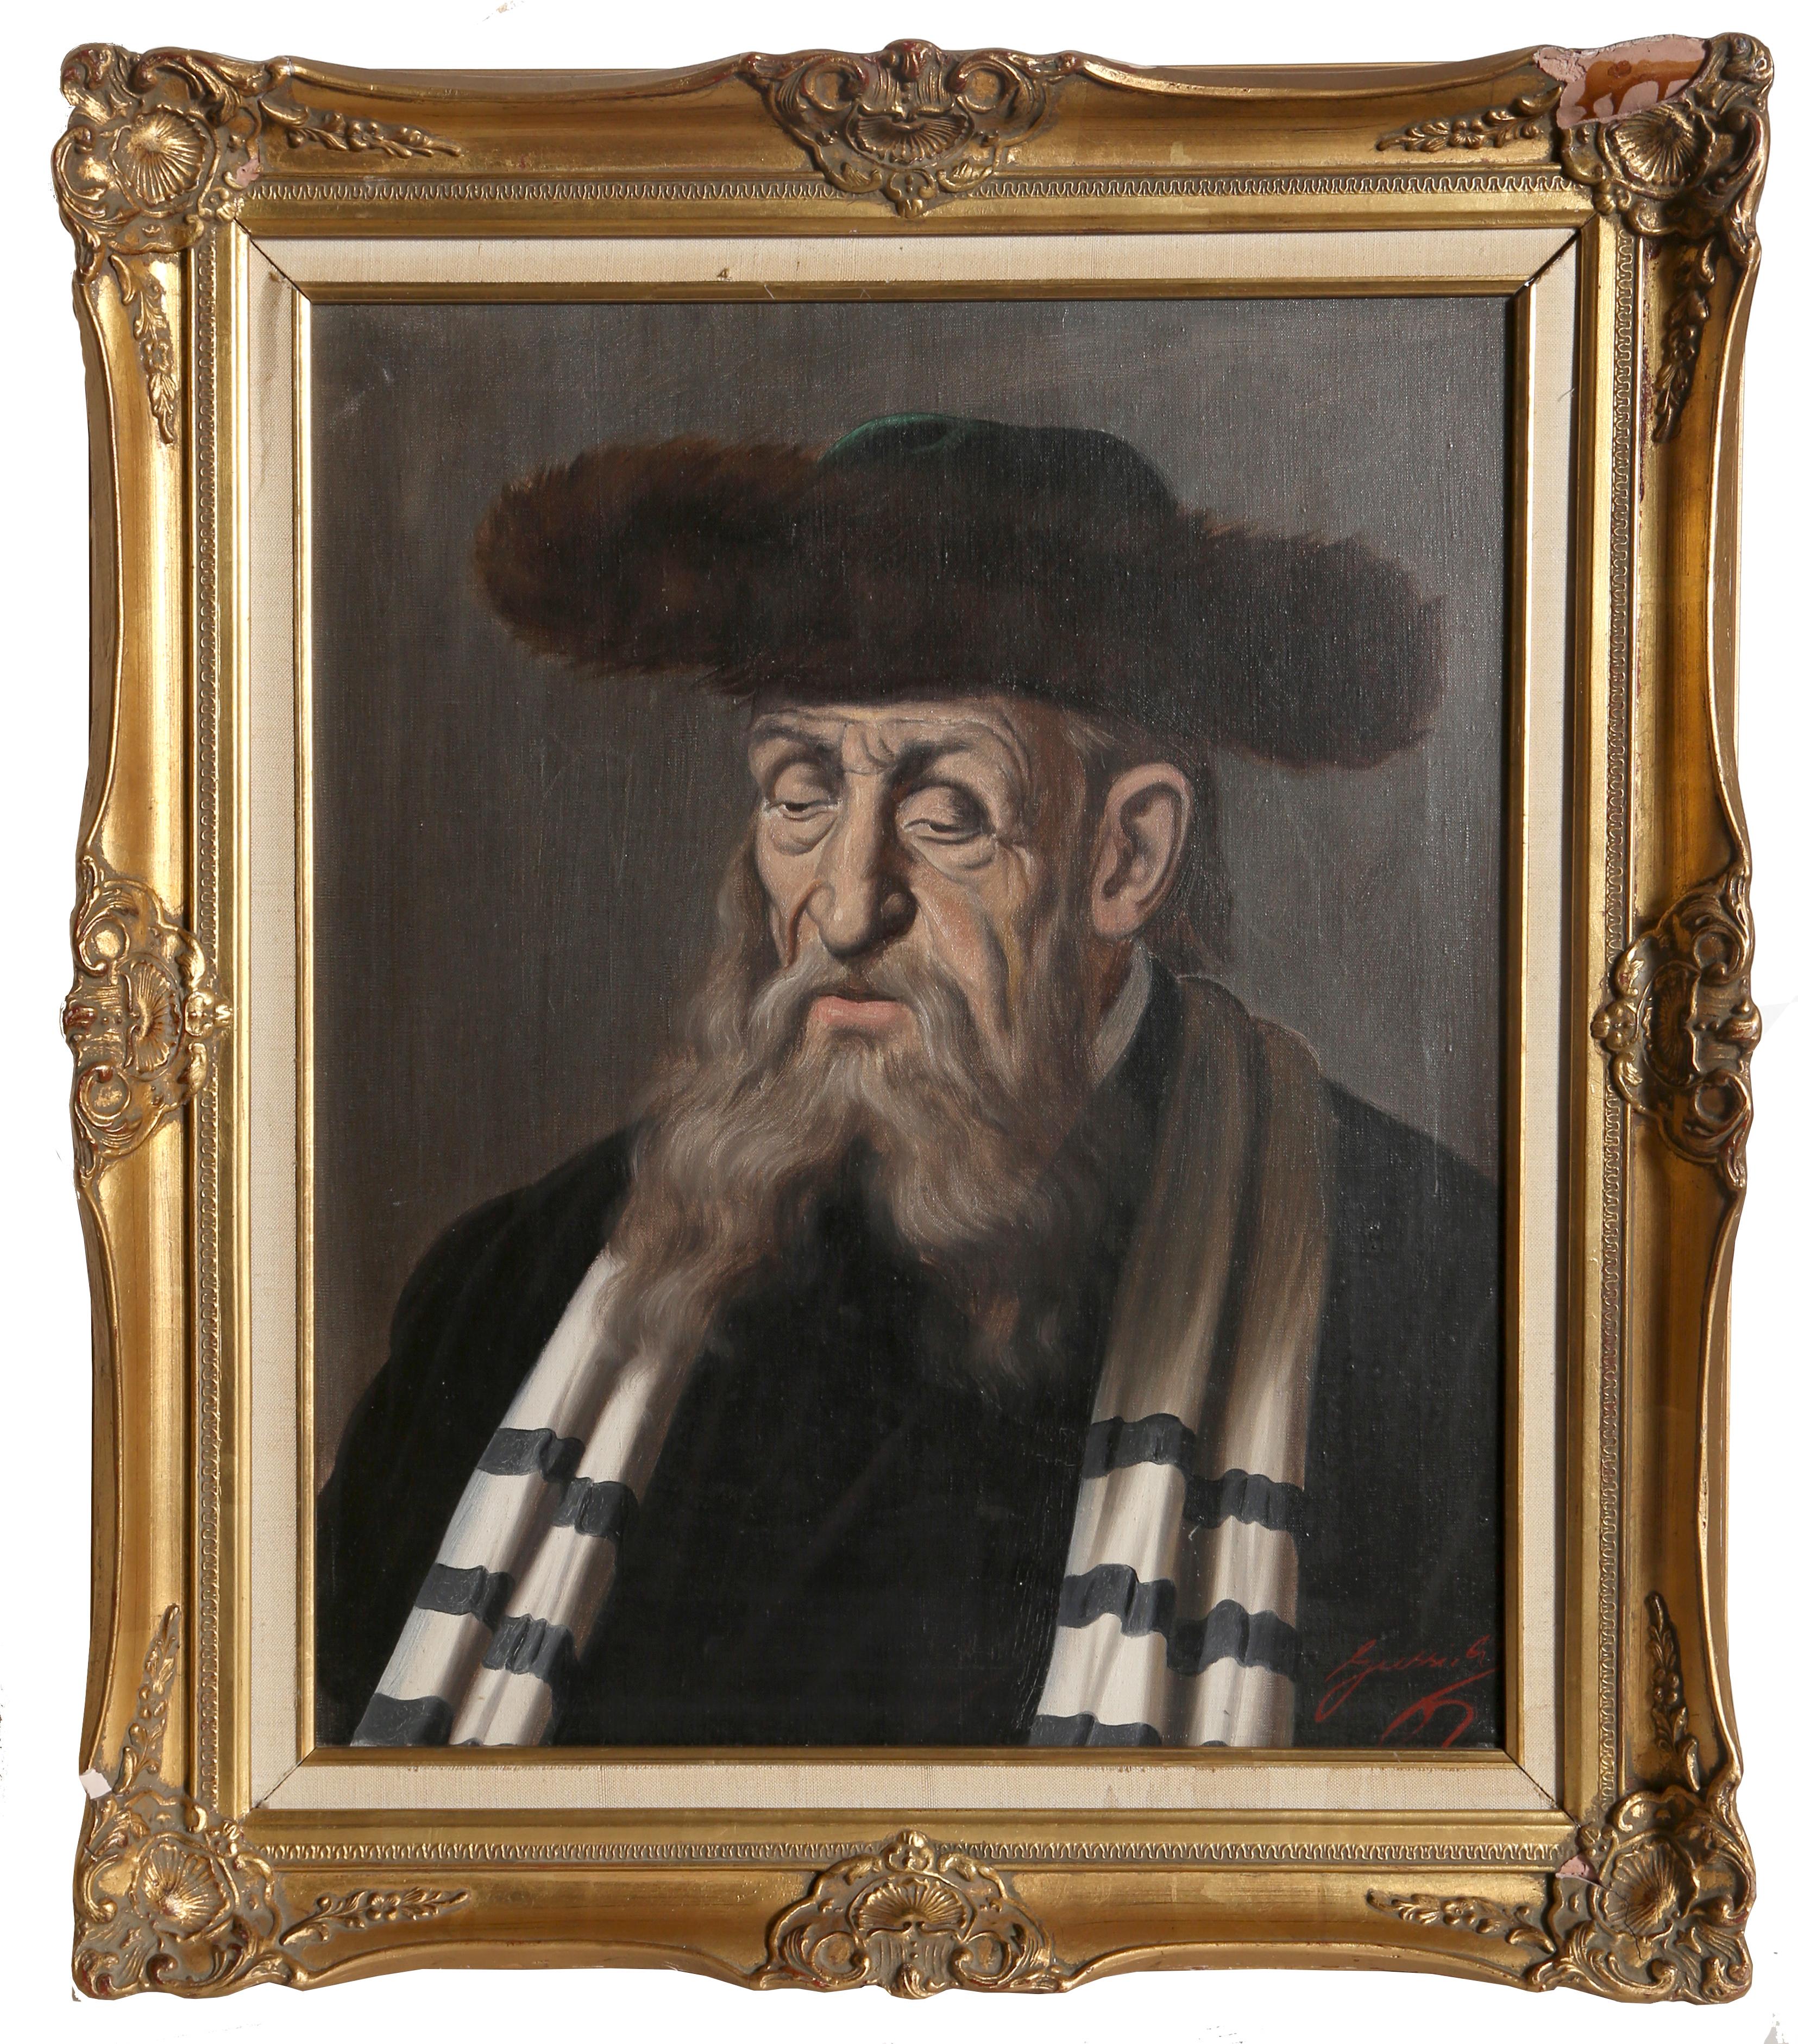 Artiste : Jeno Gussich, Hongrois (1905 - ? ?)
Titre : Rabbin avec un chapeau de fourrure
Moyen : Huile sur toile, signé en bas à droite 
Taille : 24 x 20 pouces
Taille du cadre : 30.5 x 26 pouces